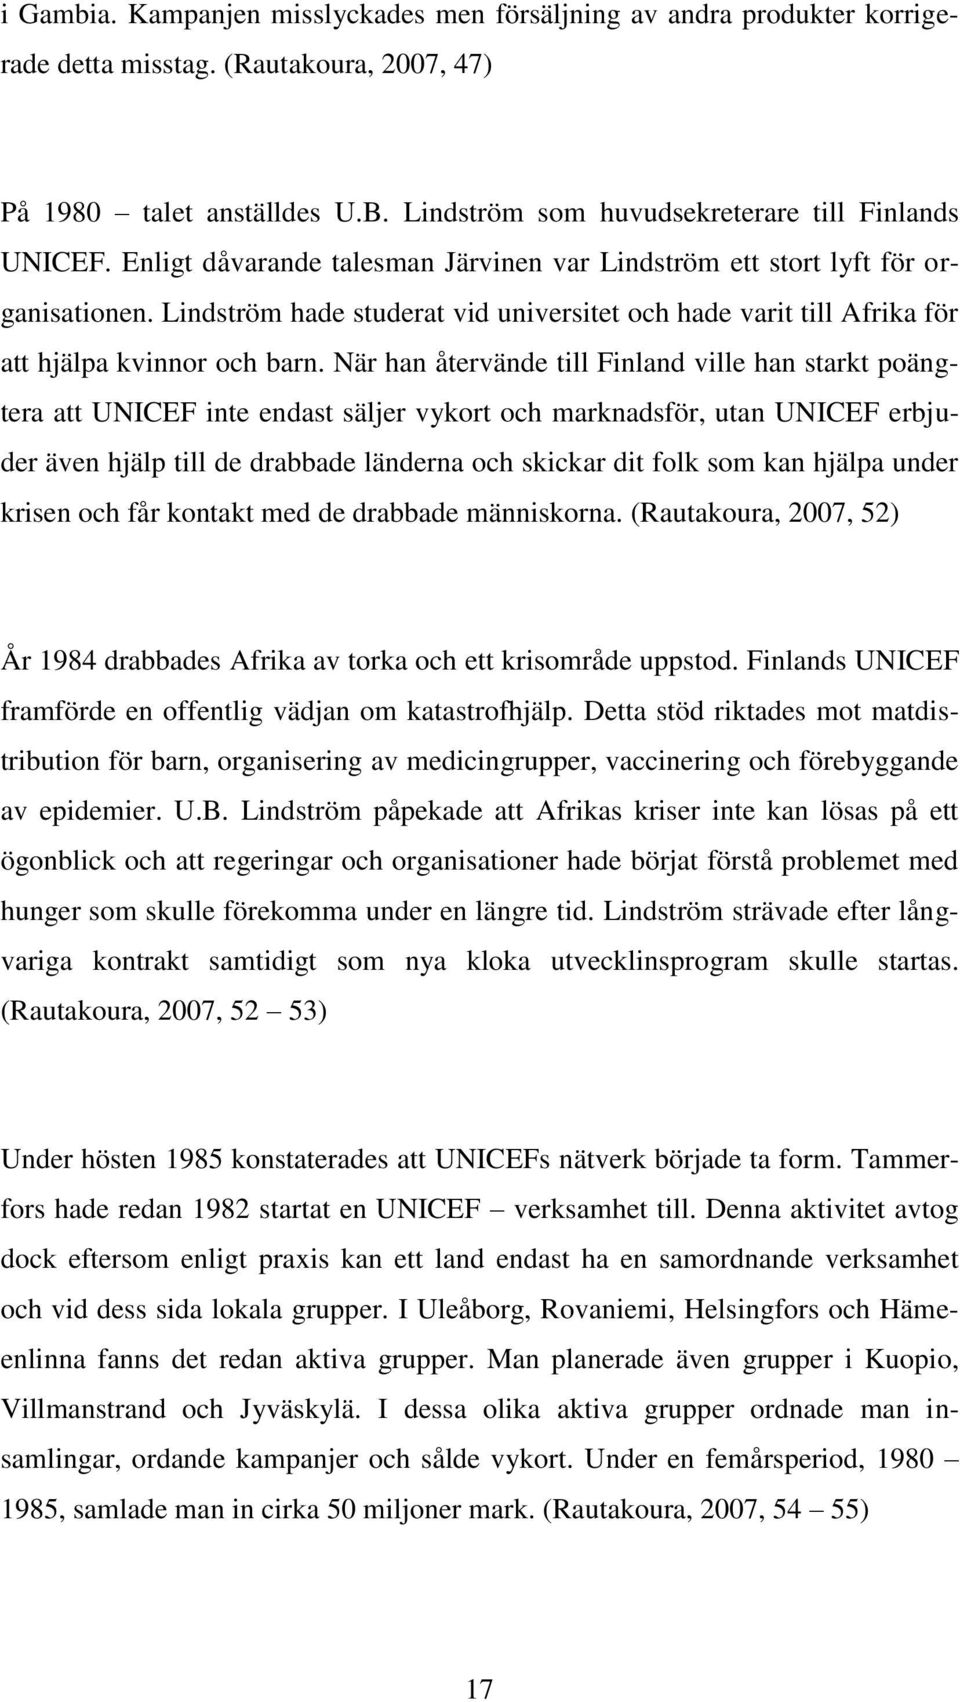 När han återvände till Finland ville han starkt poängtera att UNICEF inte endast säljer vykort och marknadsför, utan UNICEF erbjuder även hjälp till de drabbade länderna och skickar dit folk som kan